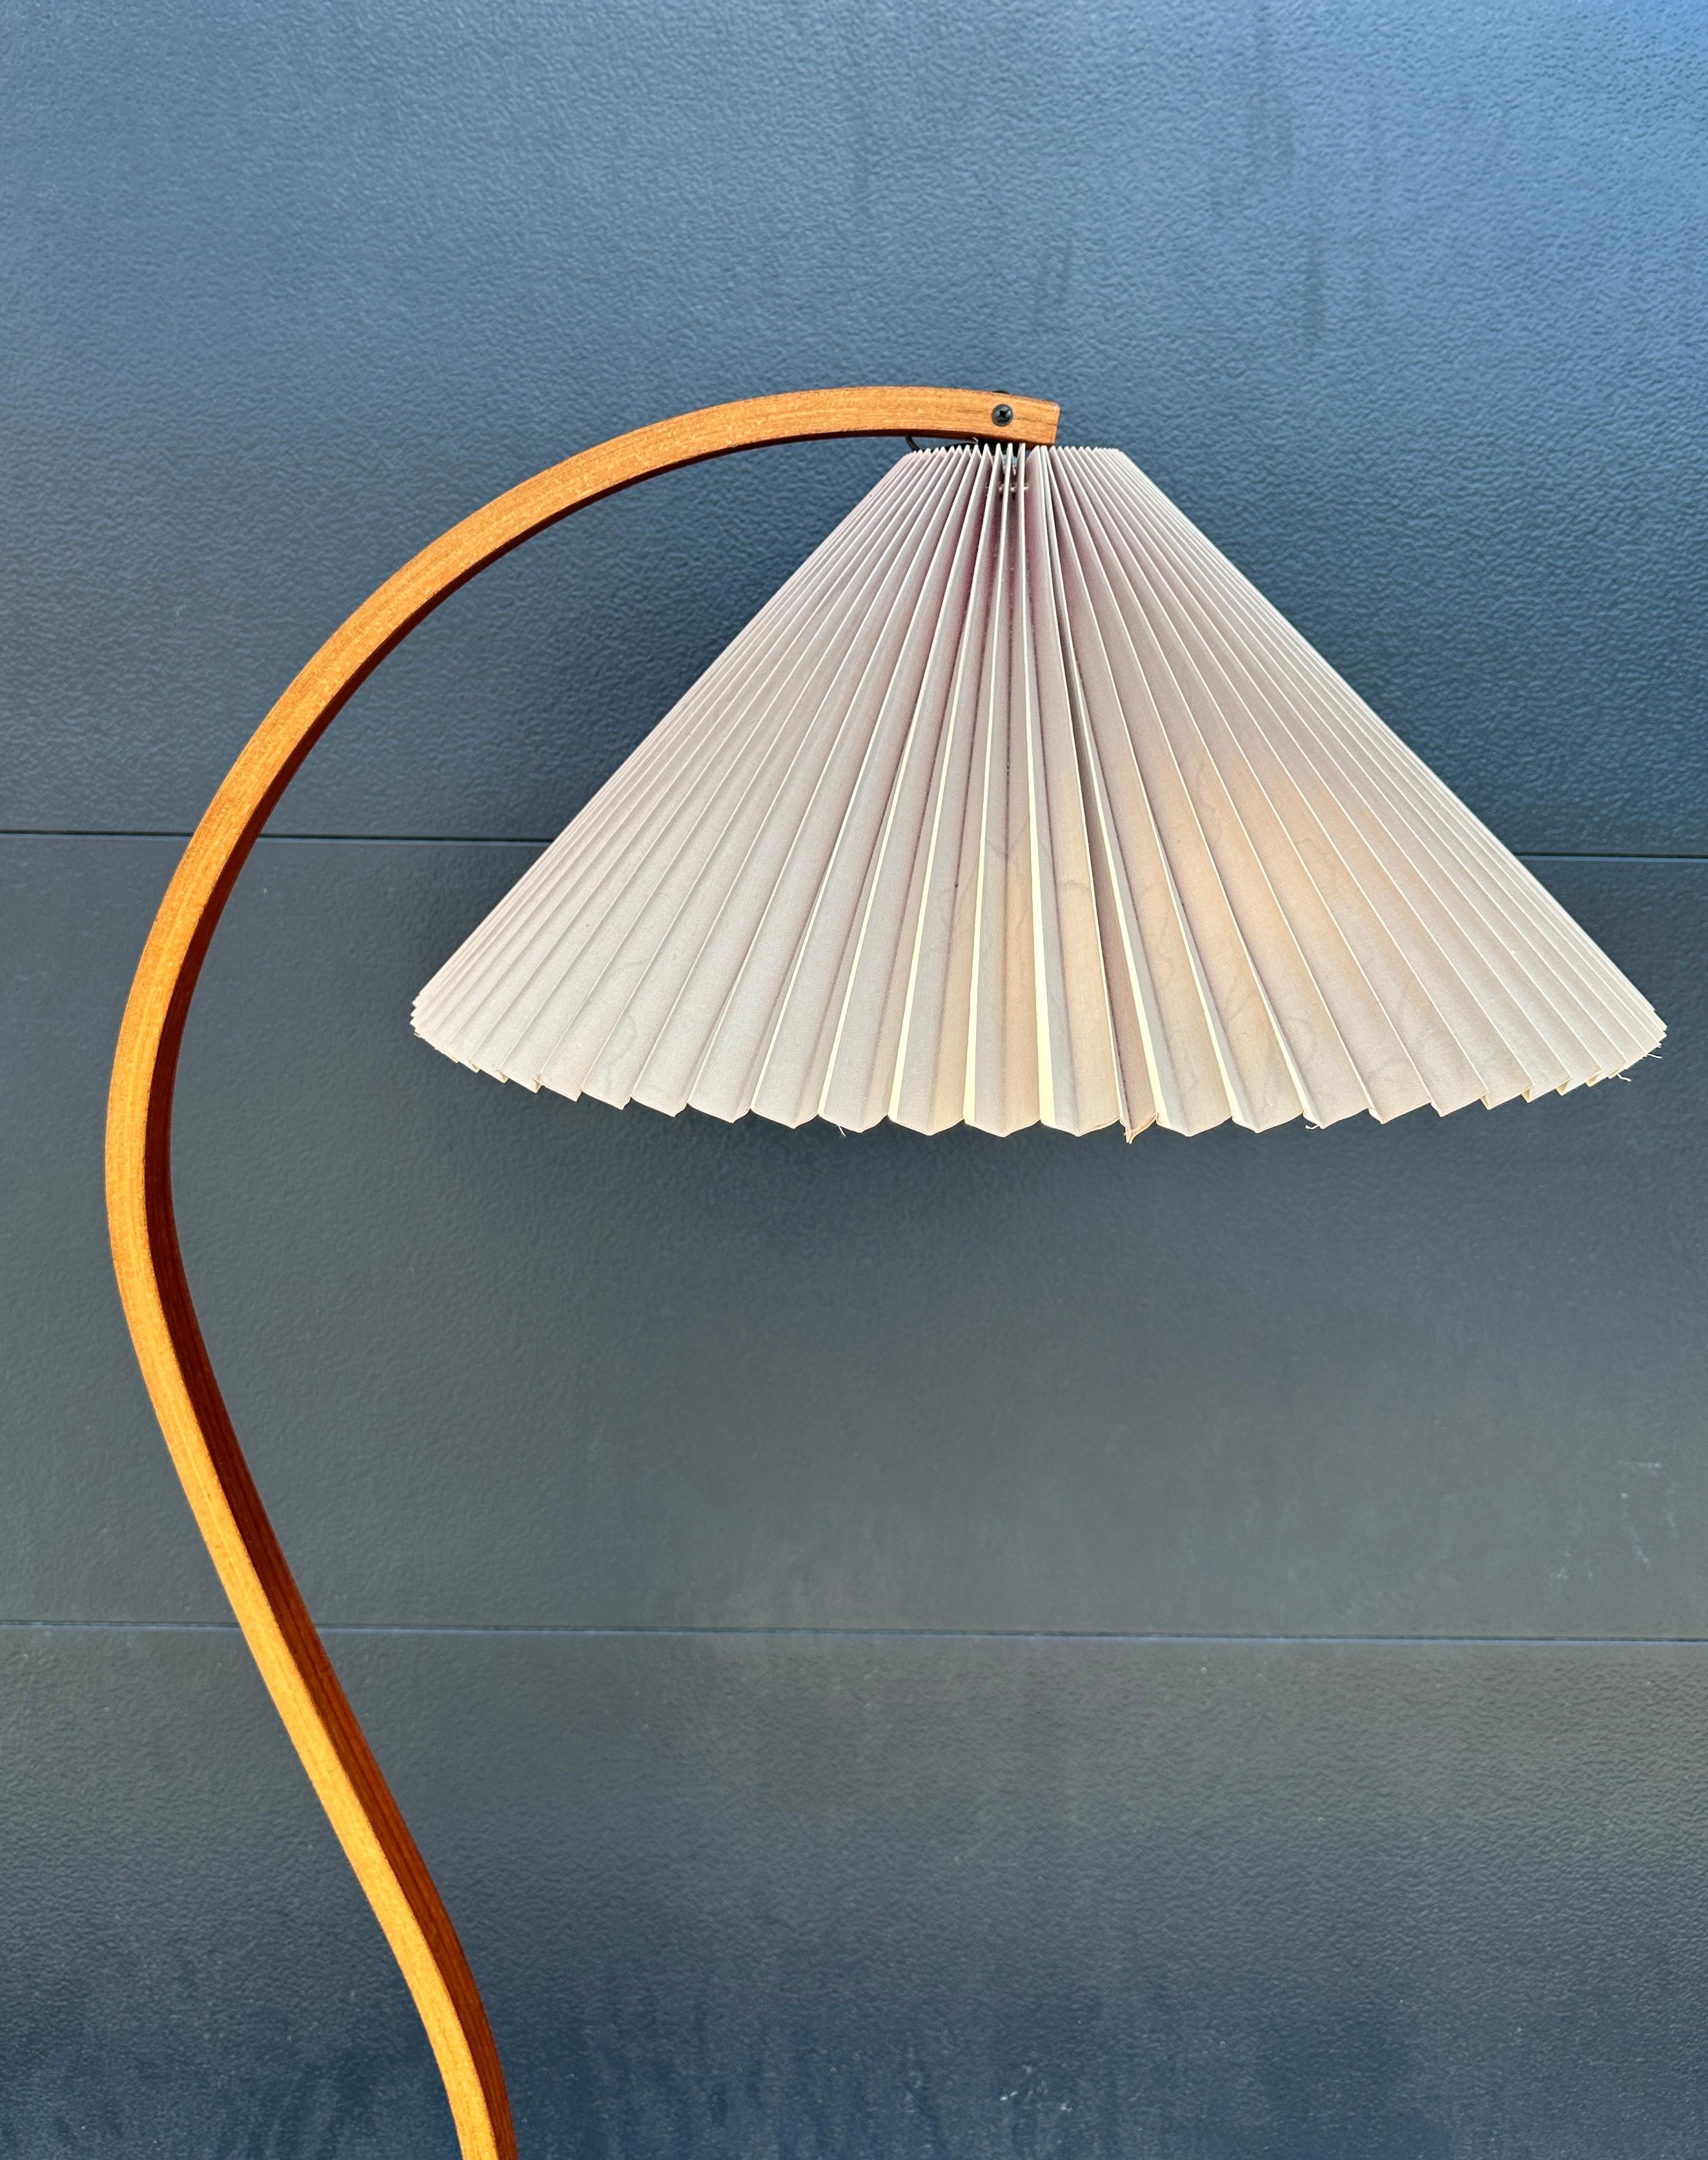 Original Caprani Bugholz-Stehlampe, circa. 1970. Diese Vintage-Lampe verfügt über einen skulpturalen, gebogenen Sperrholzständer, einen halbmondförmigen Sockel aus Gusseisen und einen gefalteten Leinenschirm. Originaler Schalter und Verkabelung in